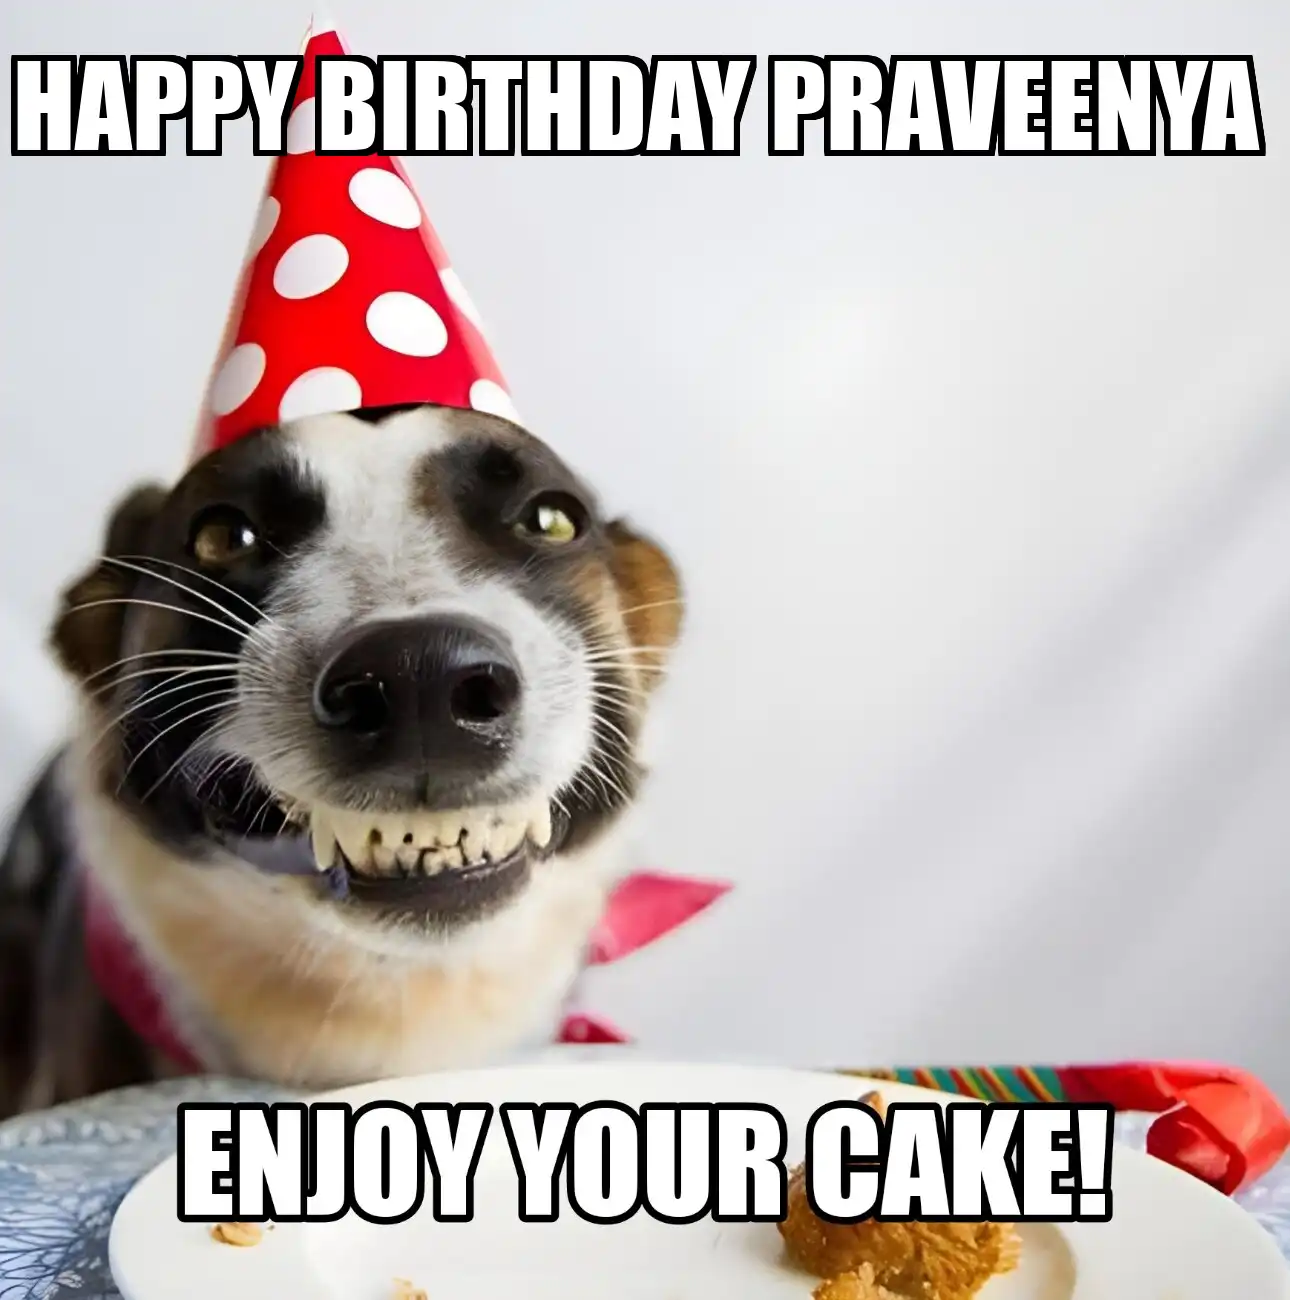 Happy Birthday Praveenya Enjoy Your Cake Dog Meme